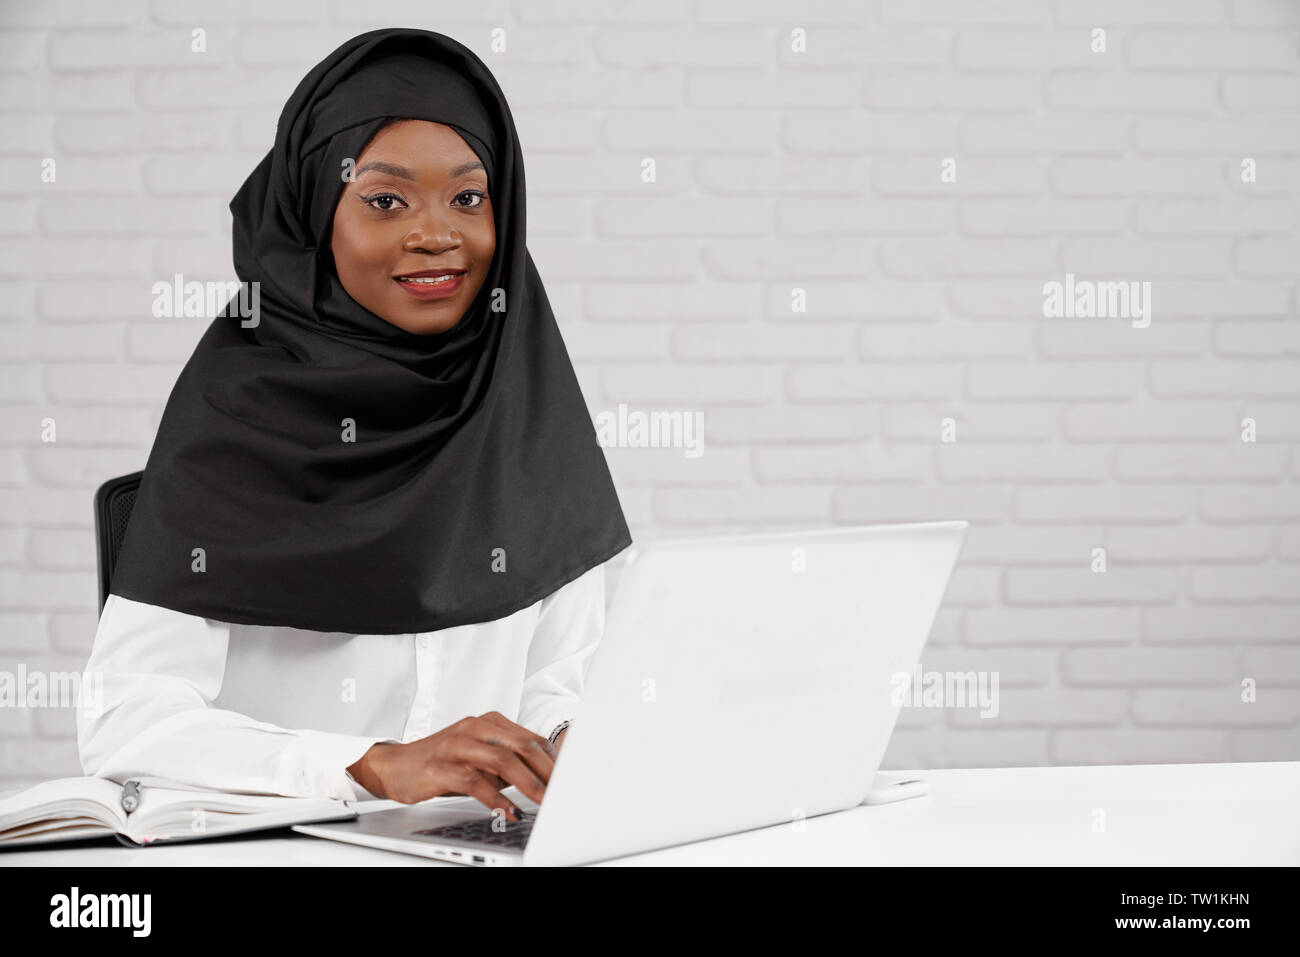 Hübsches, stilvolles, jungen afrikanischen Mädchen im Büro sitzen, mit Laptop. Schöne muslimische Frau mit Kopftuch in schwarze und weiße Kleidung lächelnd in die Kamera schauen. Stockfoto